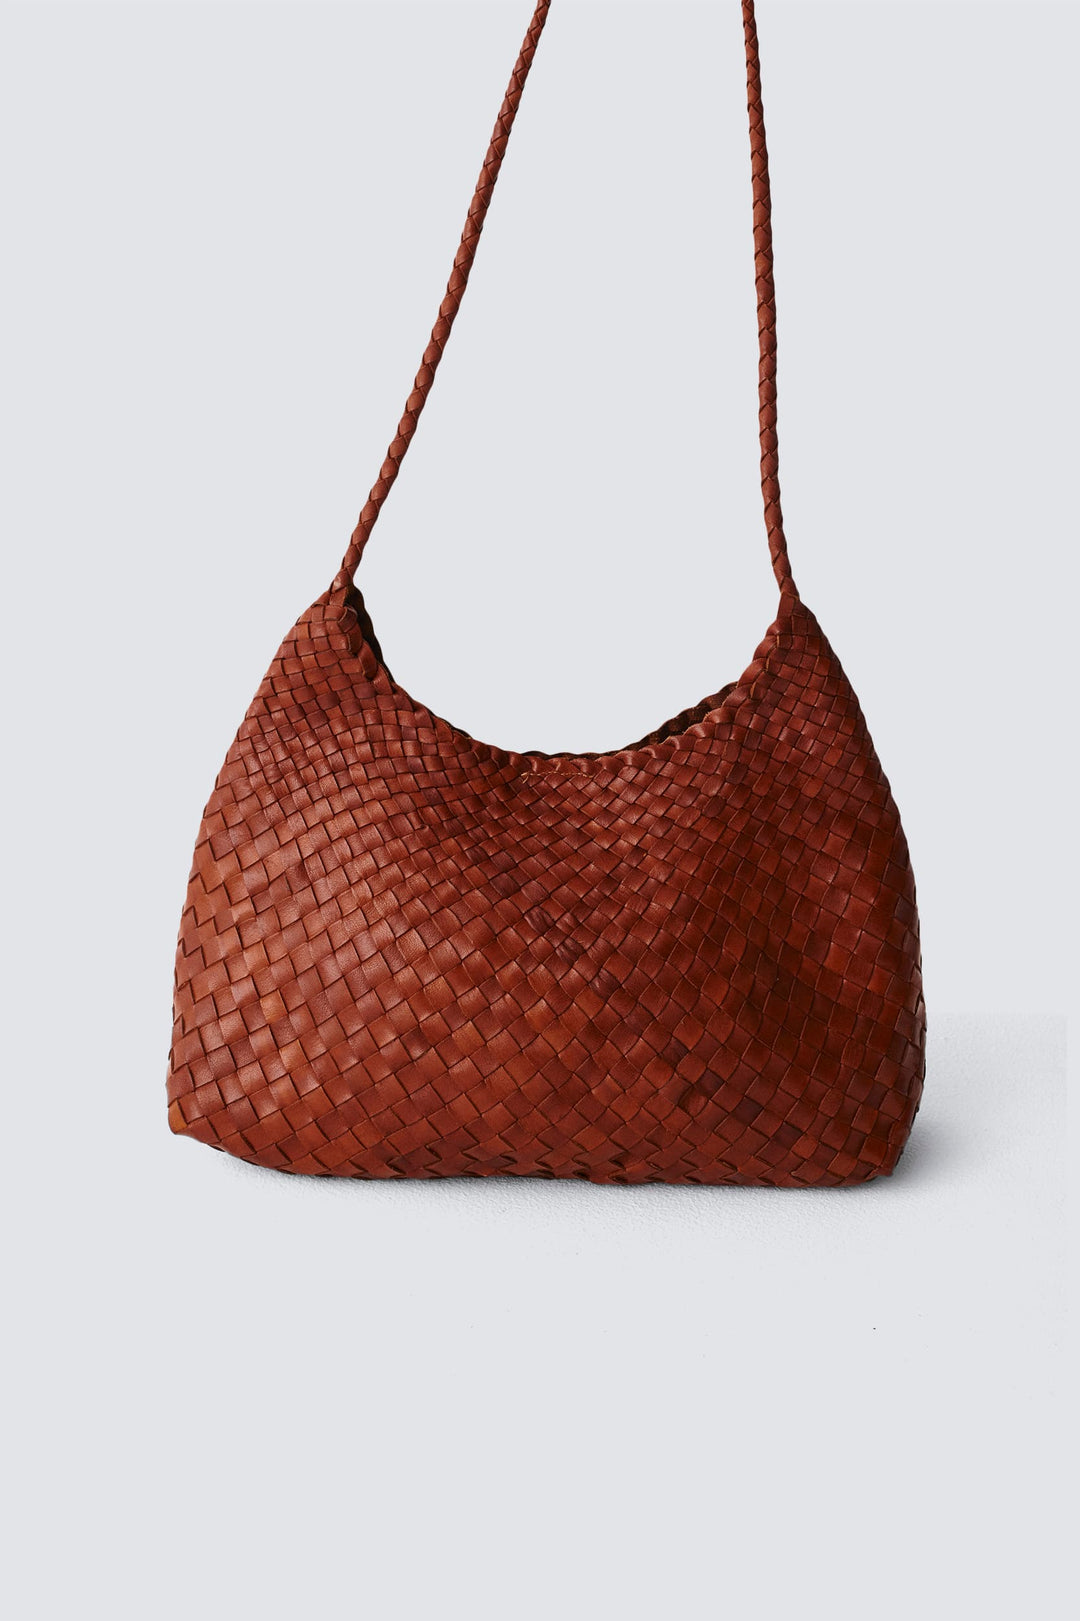 Dragon Diffusion - Santa Rosa Tan Woven Leather Bag